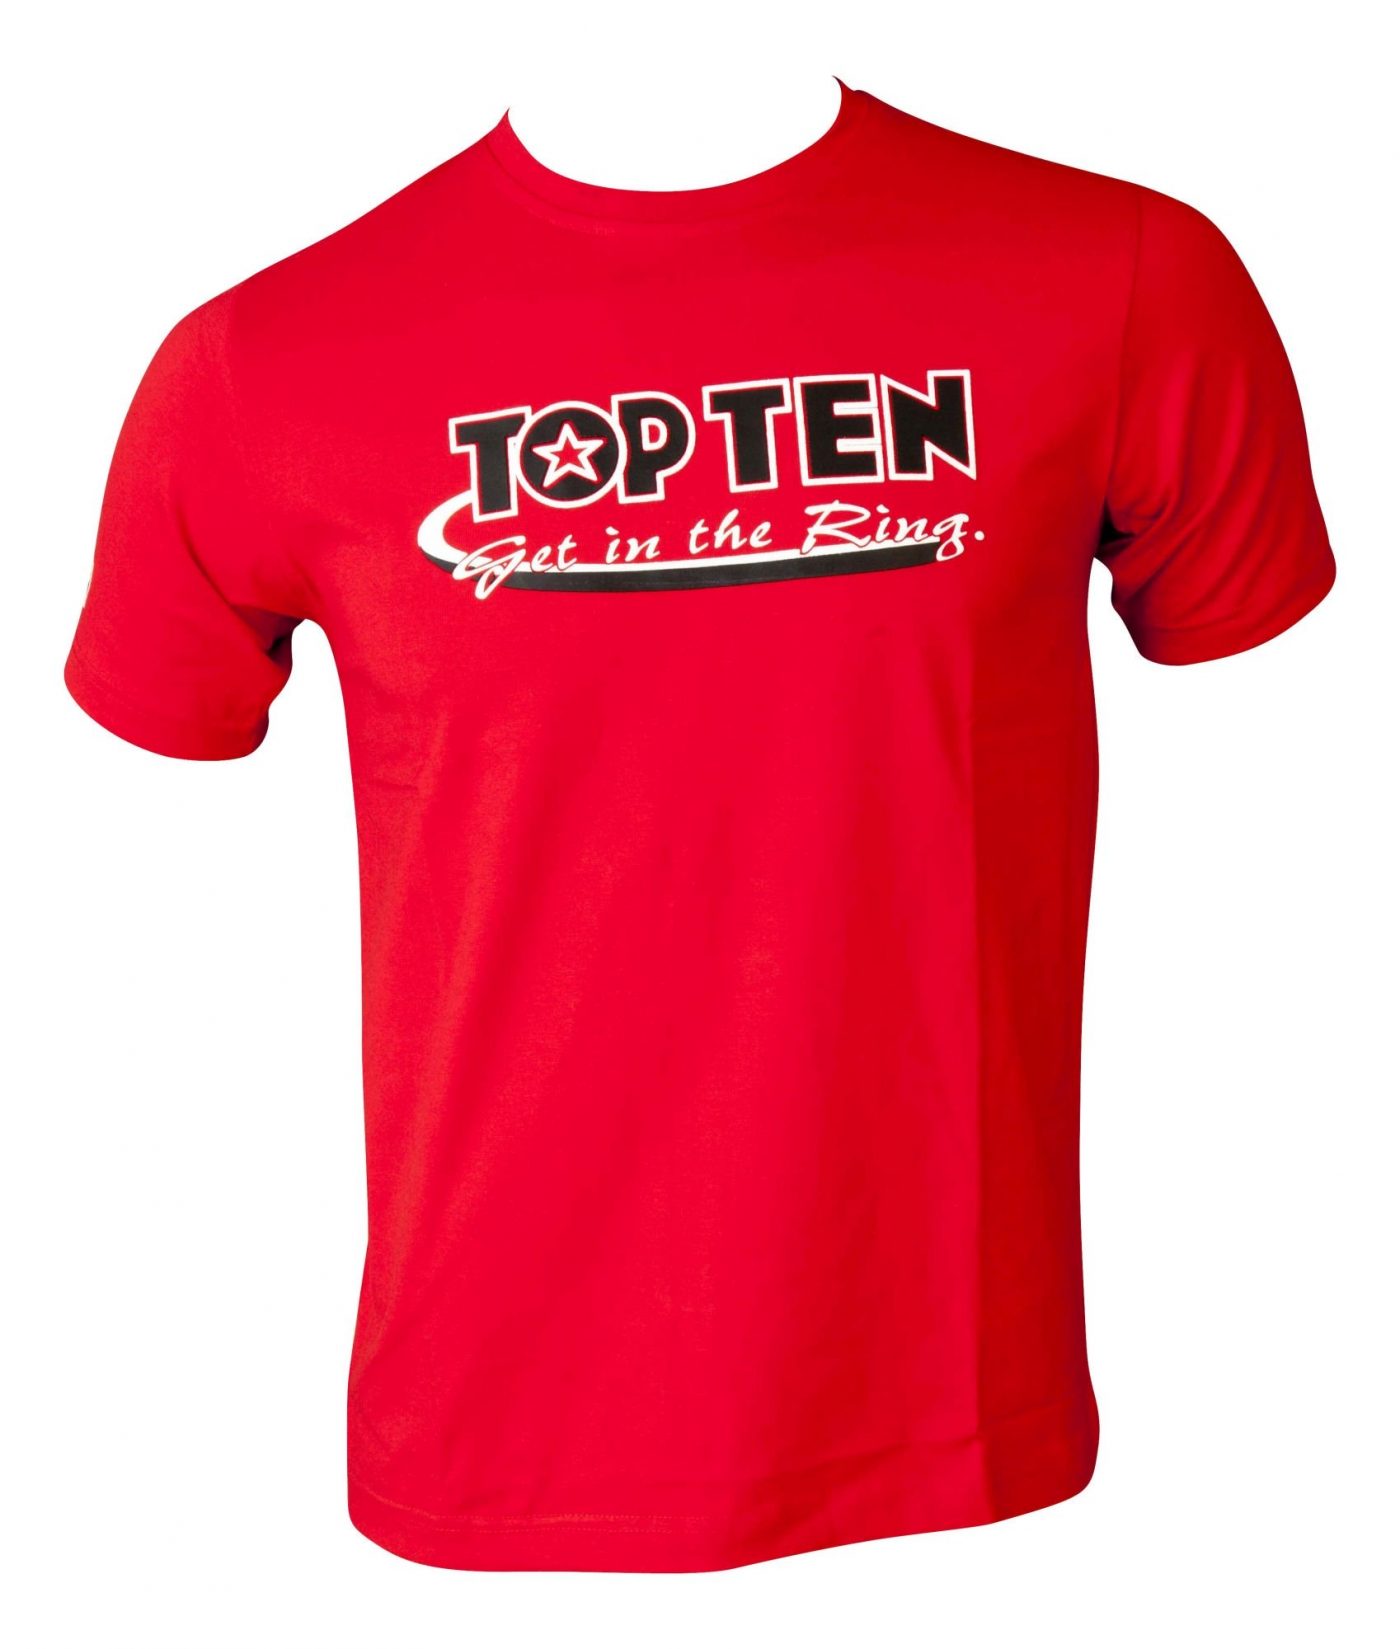 TOP TEN T-Shirt “Get in the Ring” Grijs